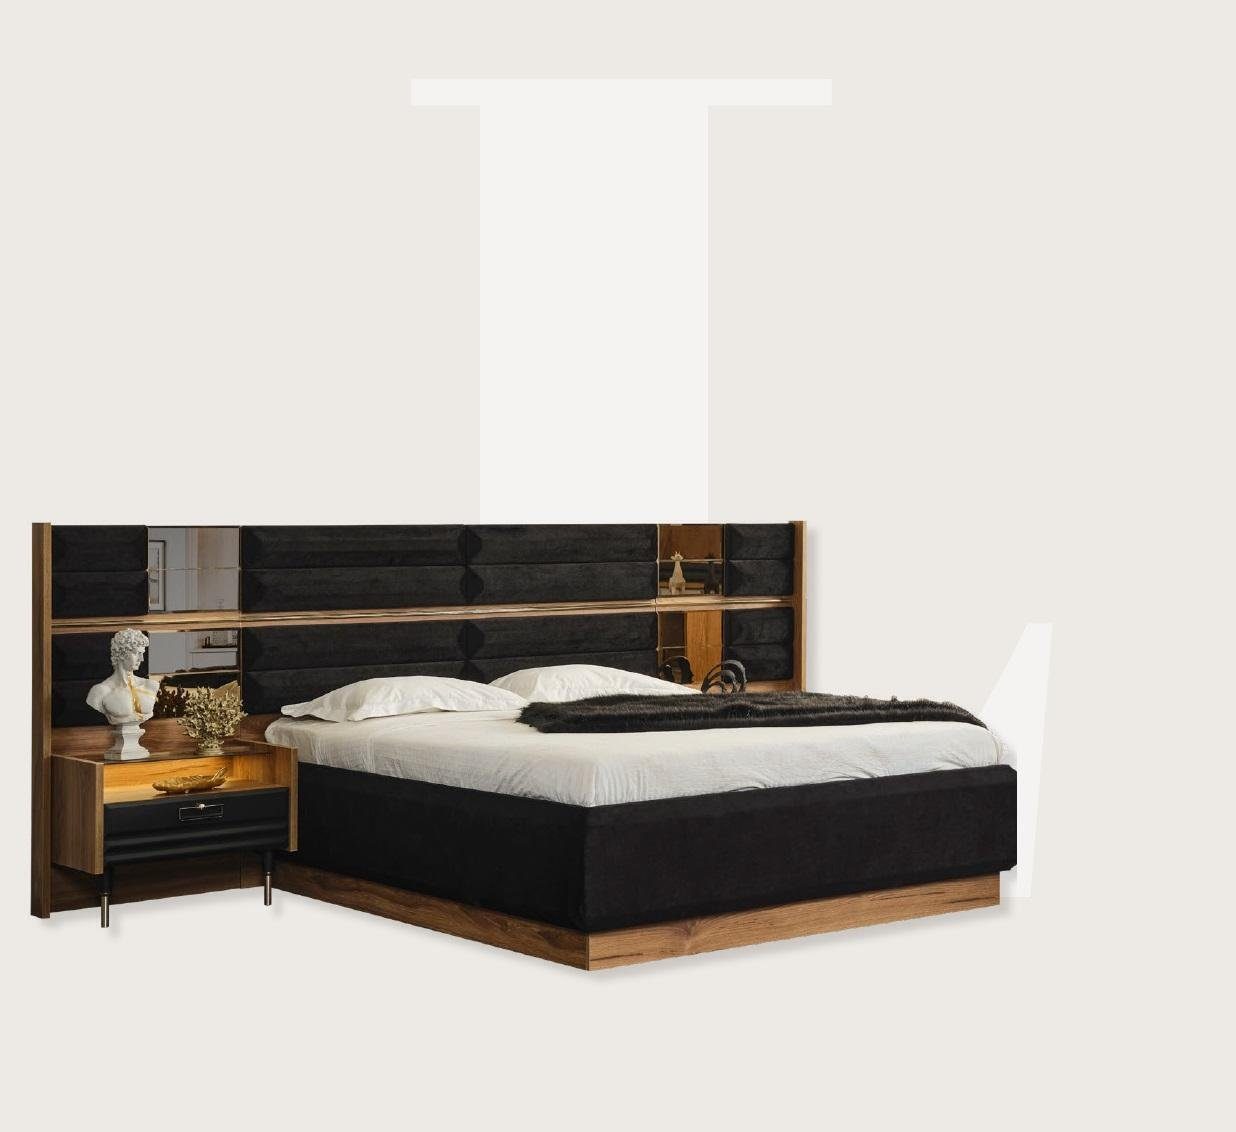 JVmoebel Bett Modernes Bett Schwarz Design Luxus Doppelbett Design Betten Möbel